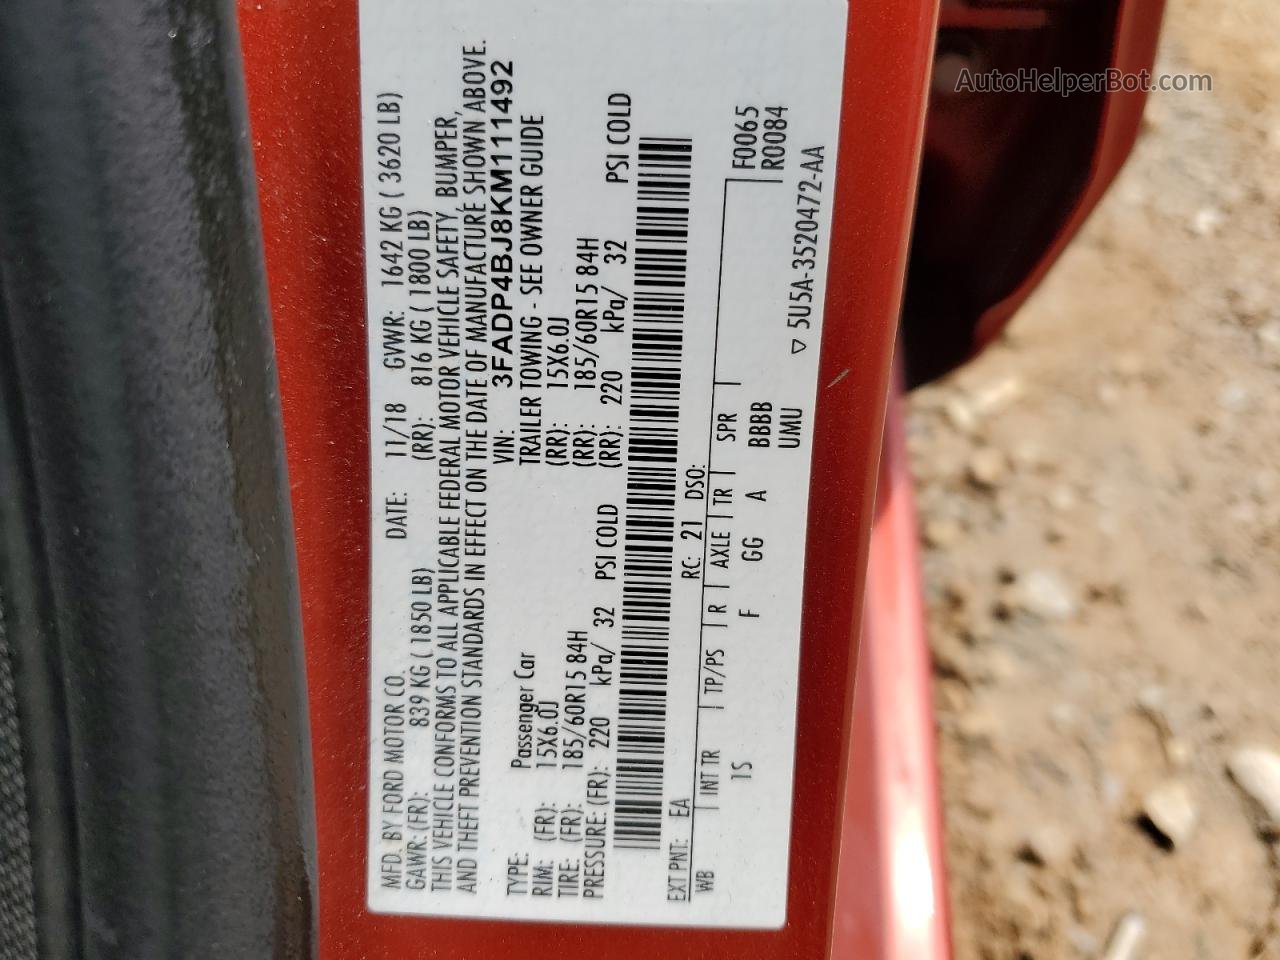 2019 Ford Fiesta Se Red vin: 3FADP4BJ8KM111492